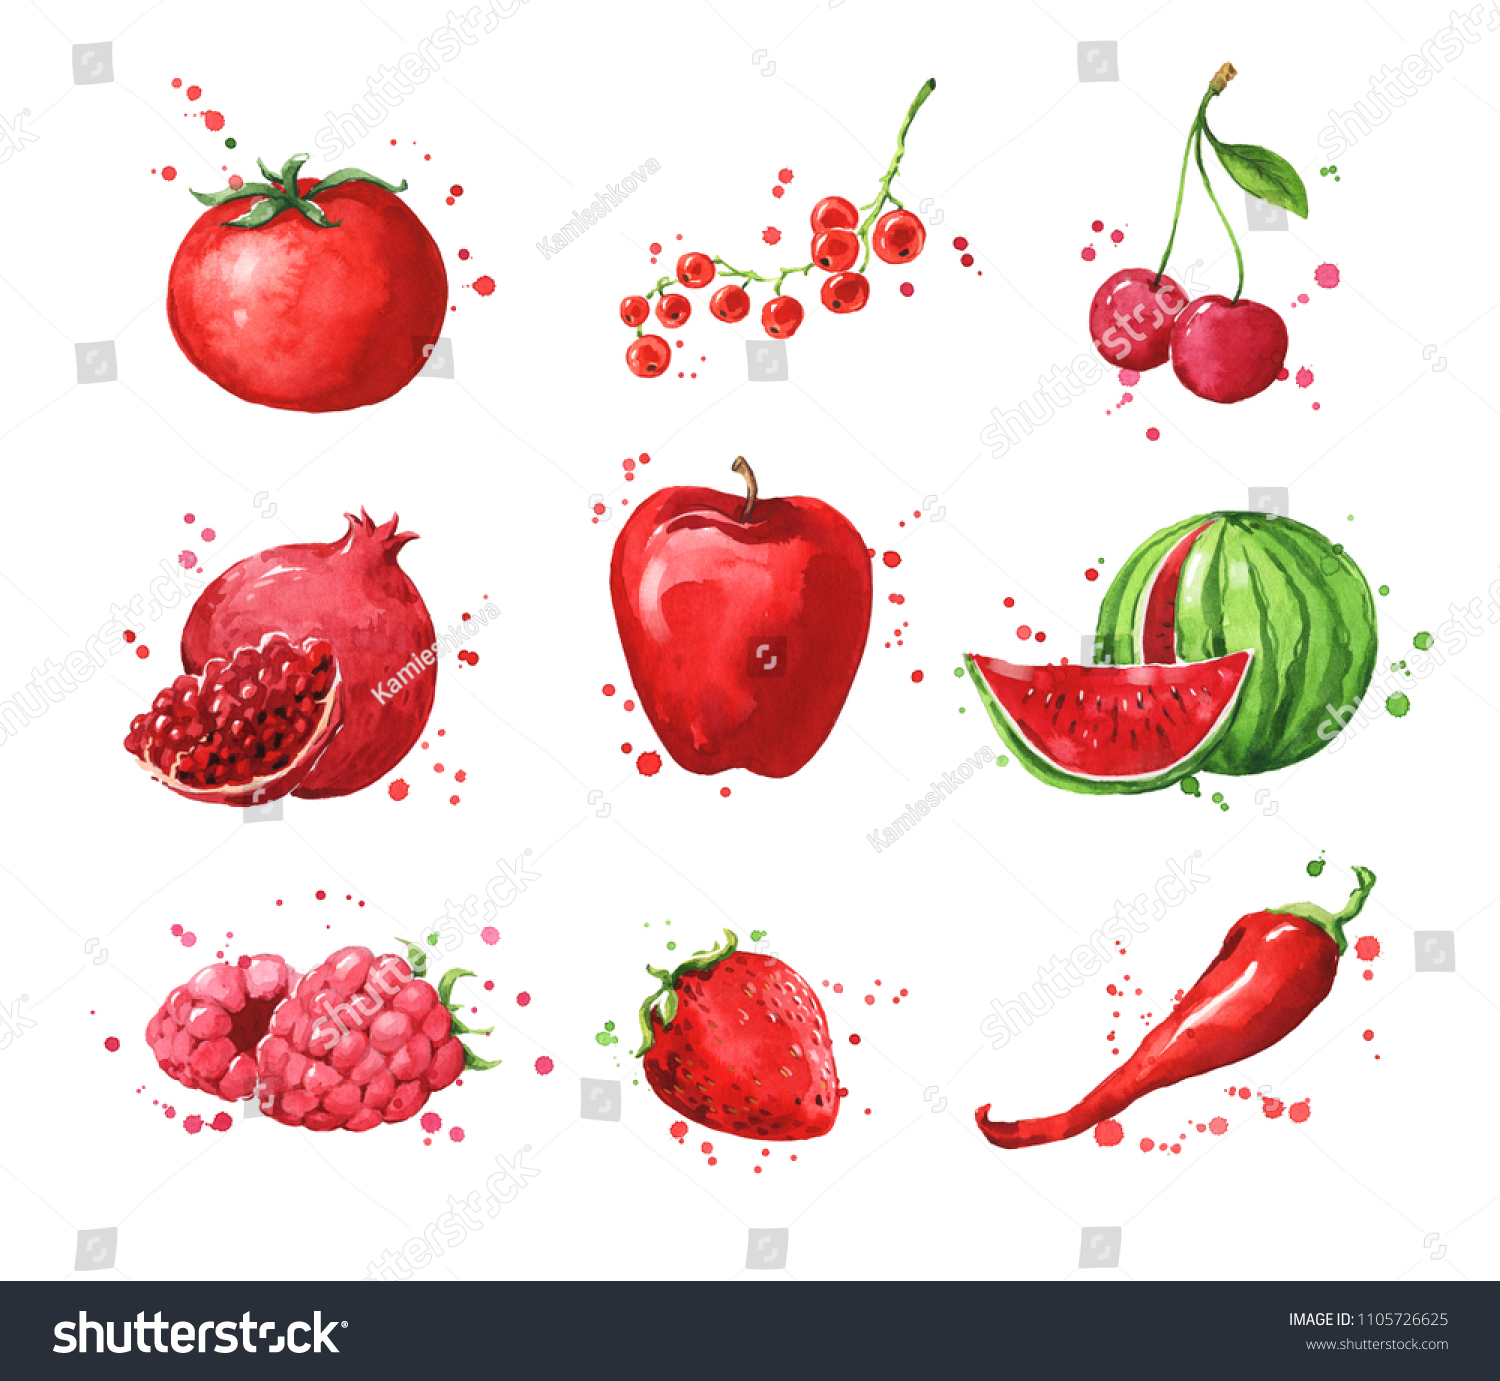 赤い食べ物 水色の果物 野菜の盛り合わせ のイラスト素材